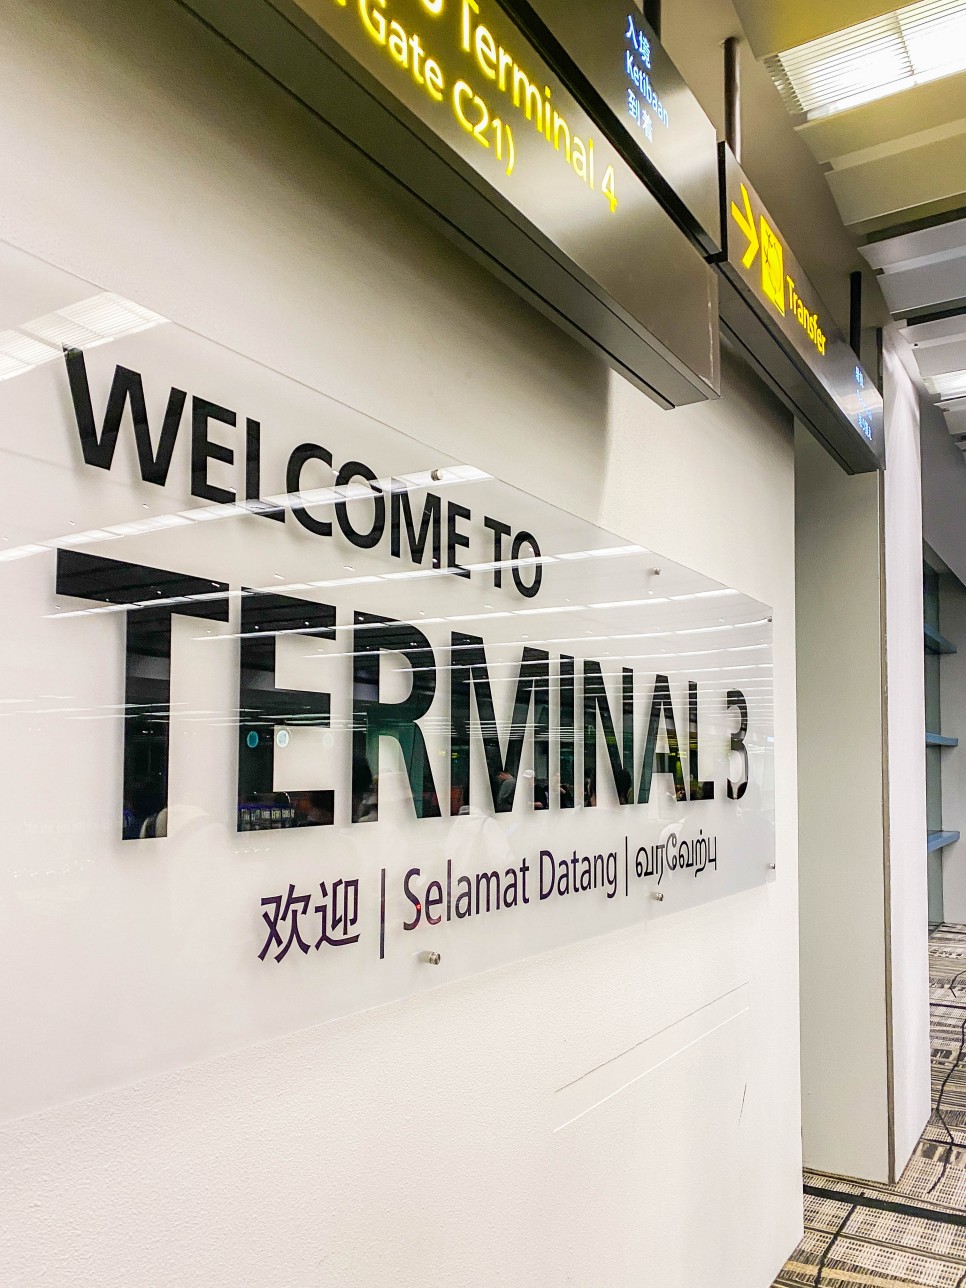 싱가포르 항공권 특가 팁 티웨이항공 싱가포르 자유여행 창이공항 쥬얼창이